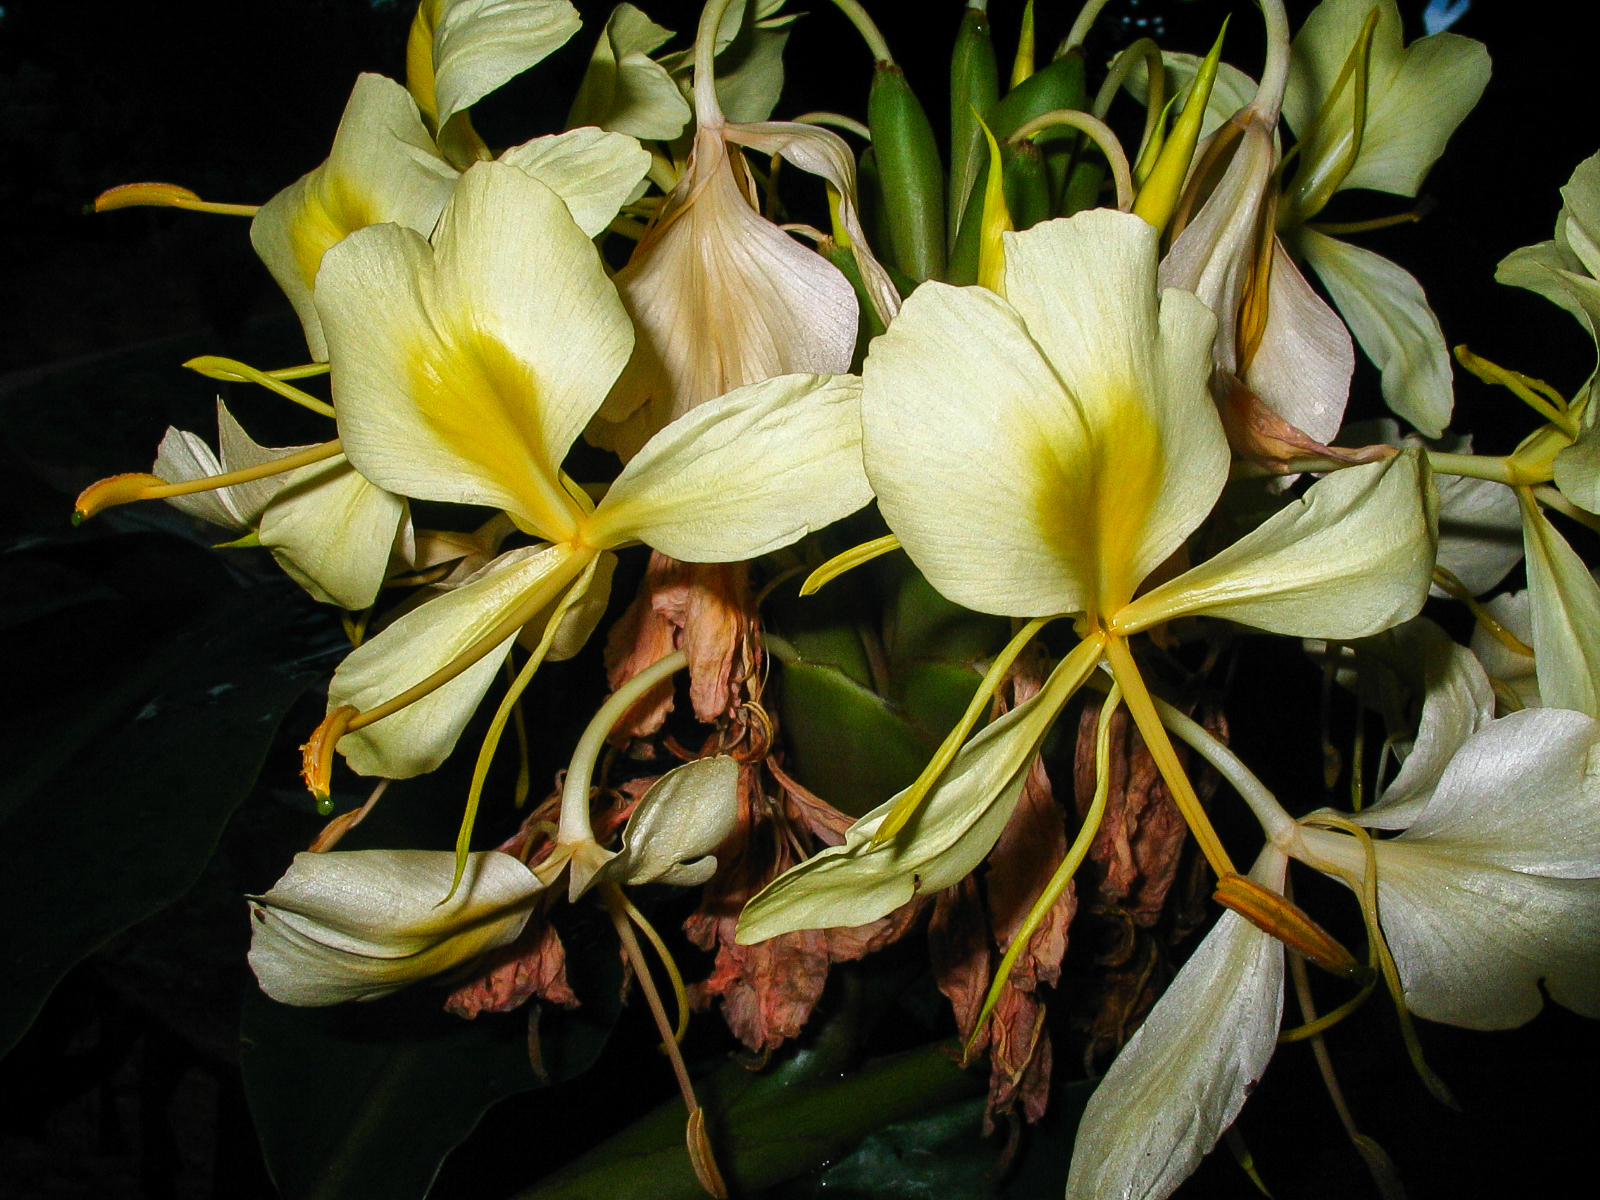 มหาหงส์เหลือง Hedychium flavescens Carey ex Roscoe<br/>Zingiberaceae